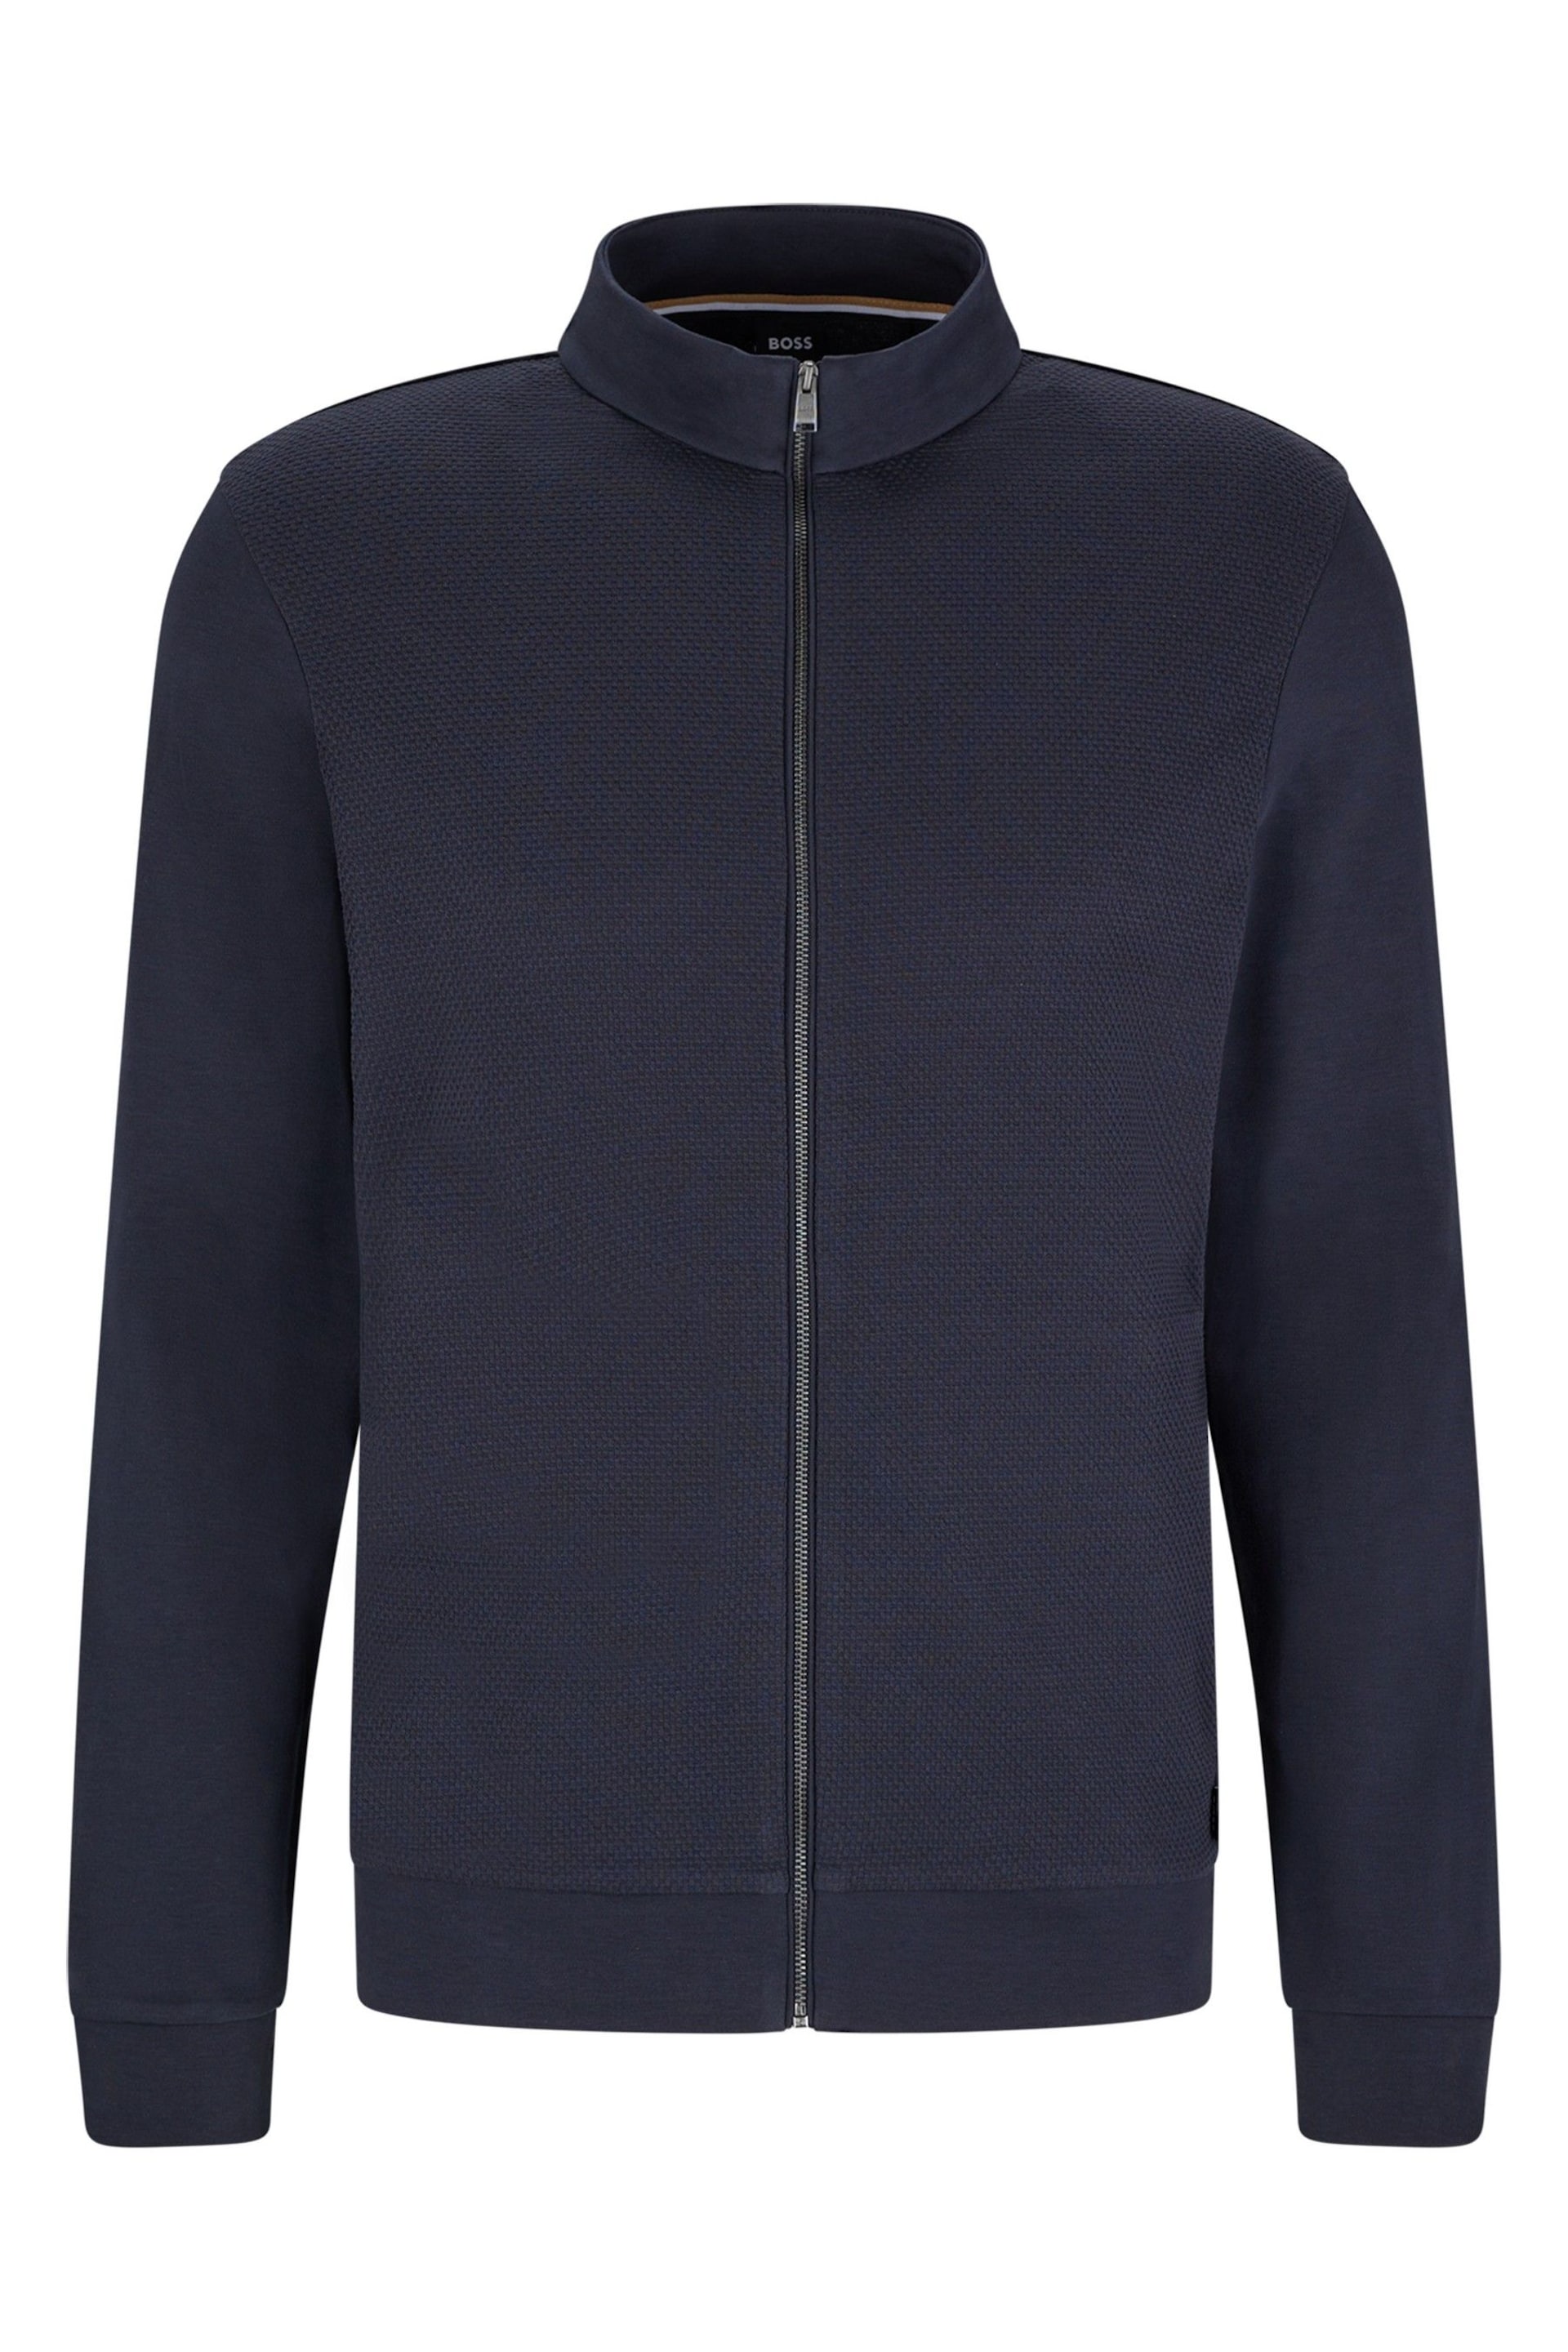 BOSS Dark Blue Textured Front Zip Through Sweatshirt - Image 4 of 4